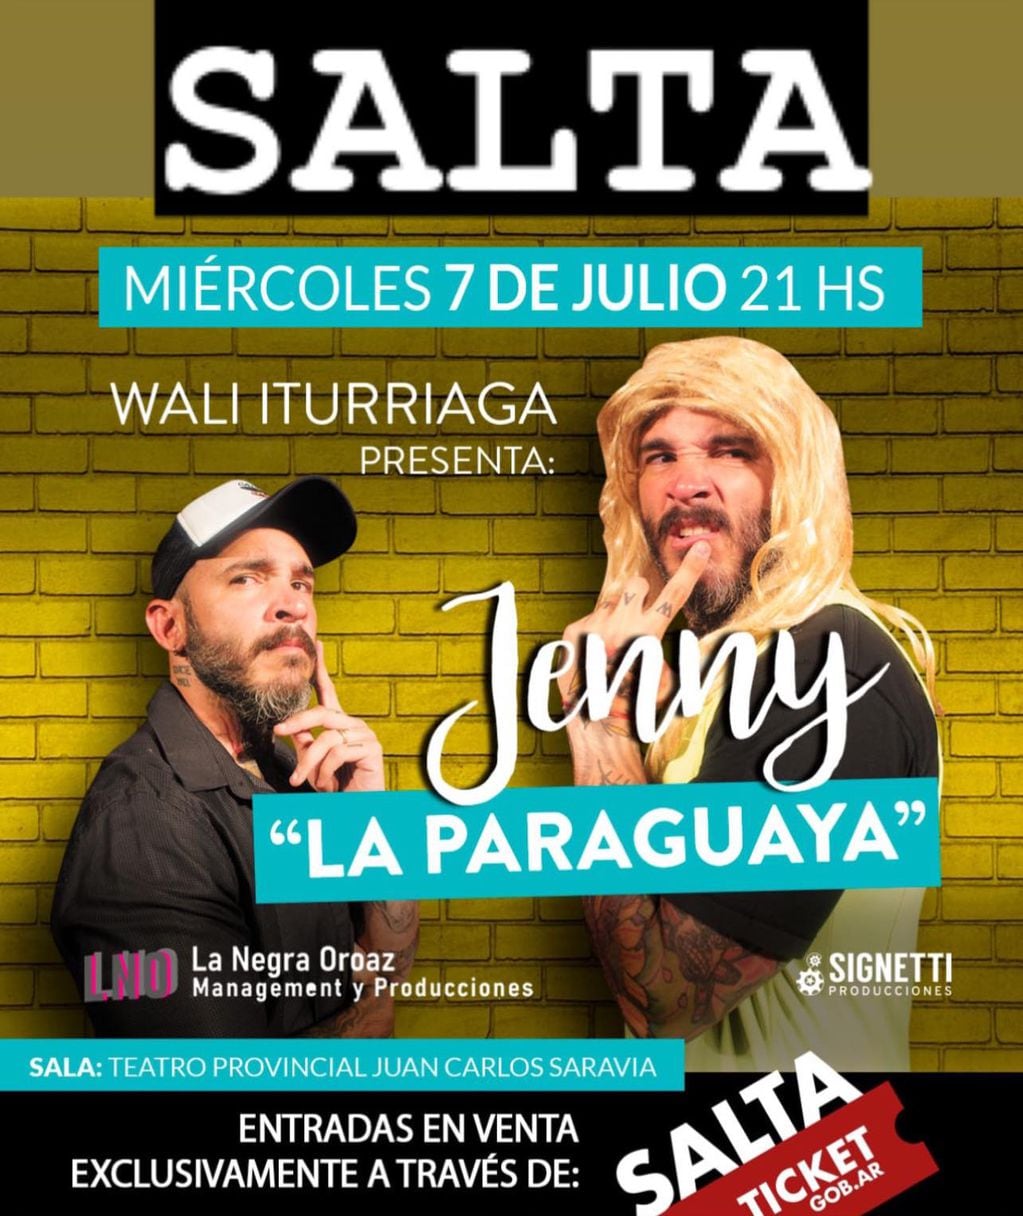 El artista se presenta el miércoles 7 de julio en el Teatro Provincial Juan Carlos Saravia.